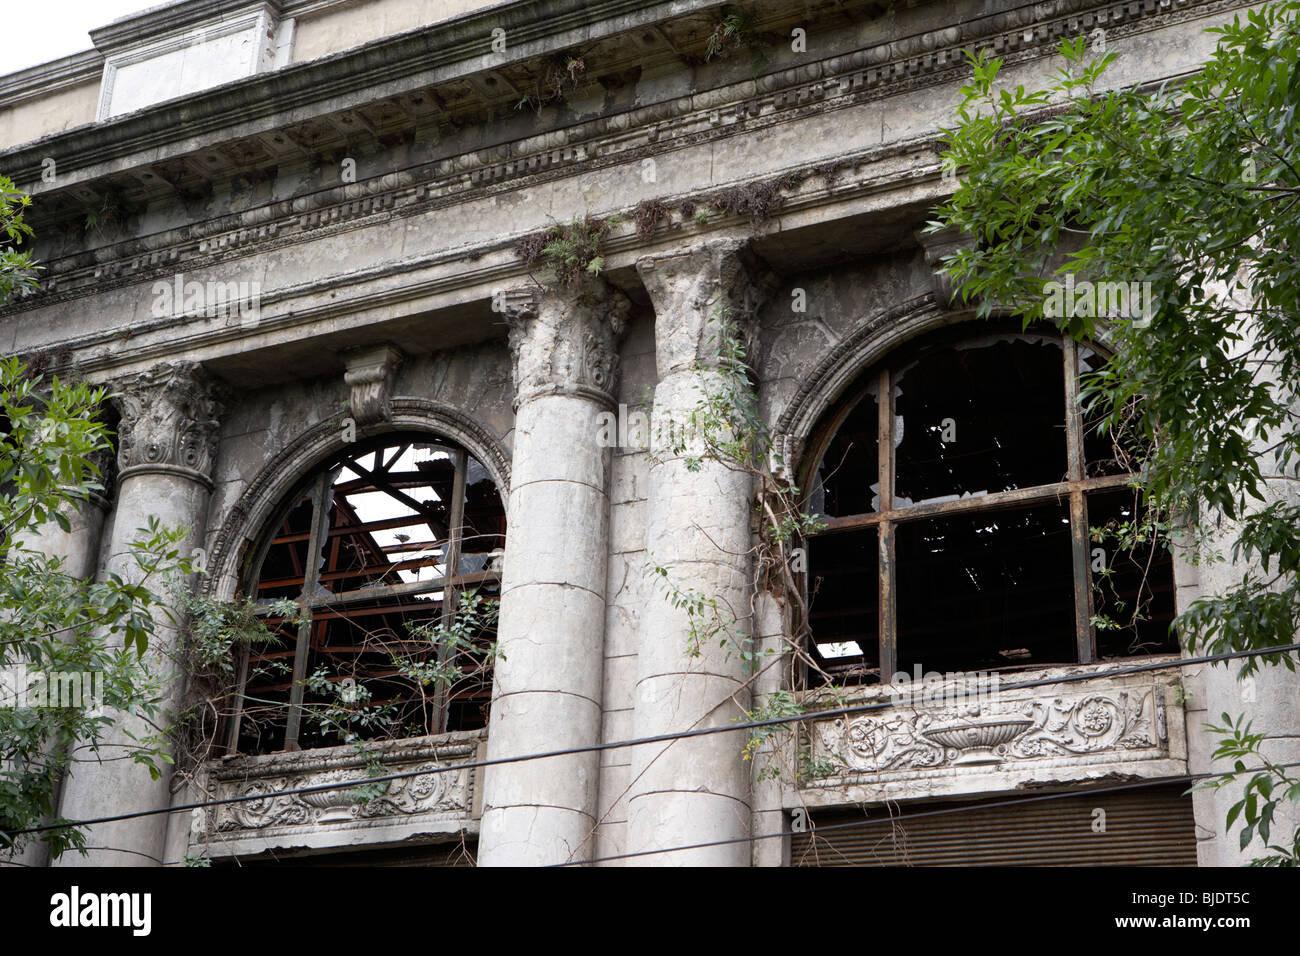 Désaffectée en ruine bâtiment colonial à la boca Capital Federal Buenos Aires Argentine Amérique du Sud Banque D'Images